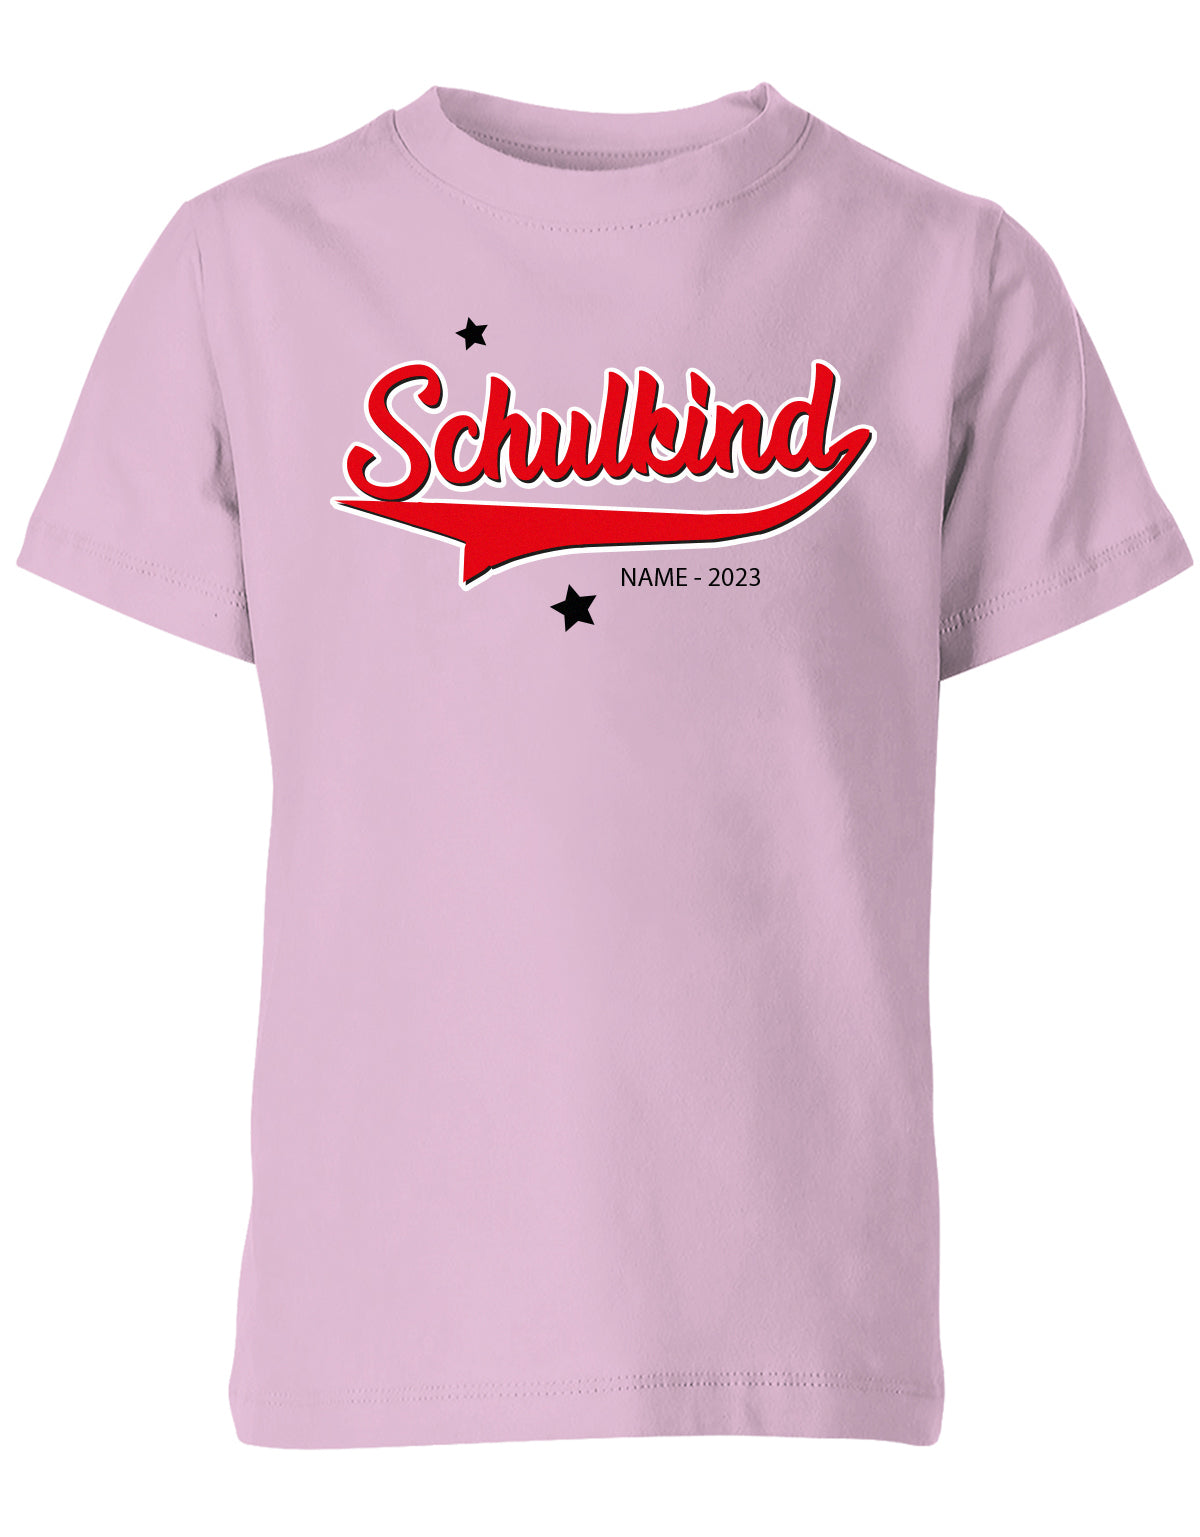 Schulkind 2023 - Collage Style - Einschulung 1. Klasse - Kinder T-Shirt Rosa